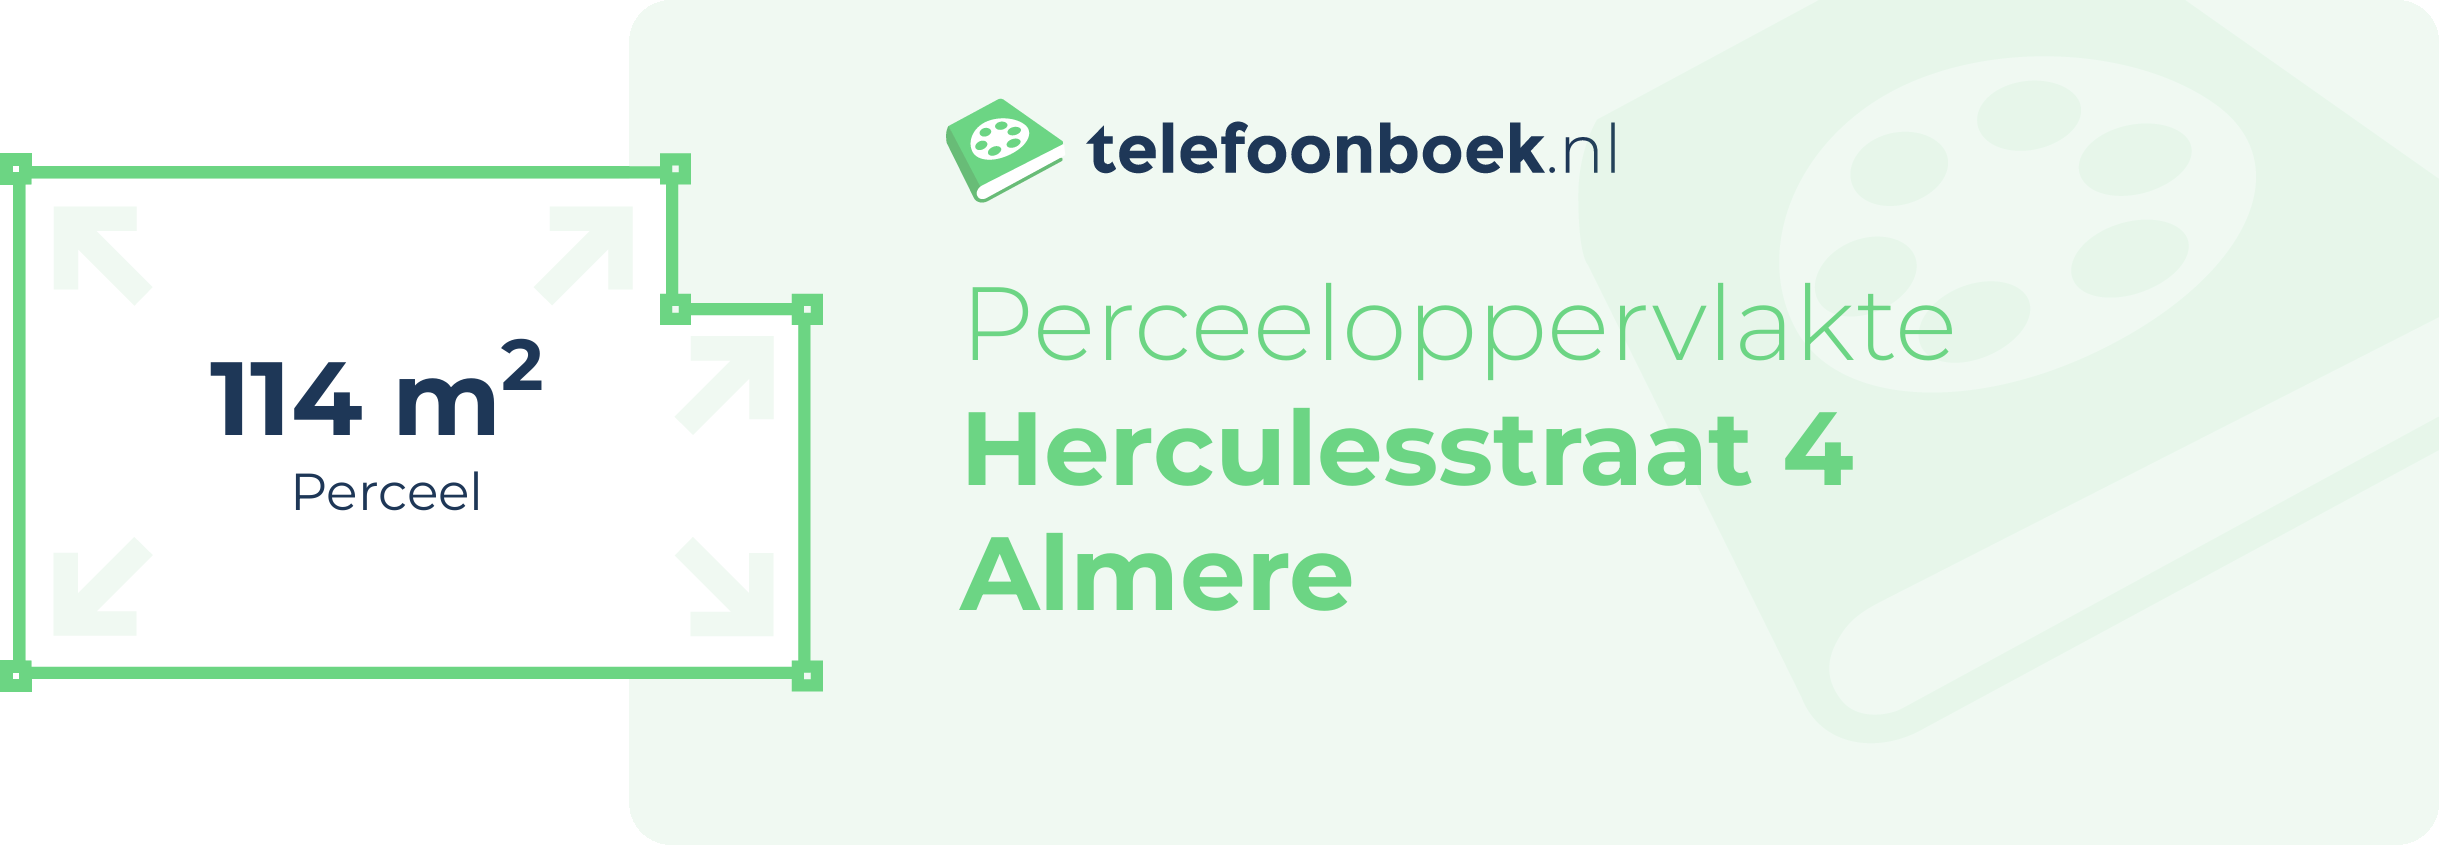 Perceeloppervlakte Herculesstraat 4 Almere